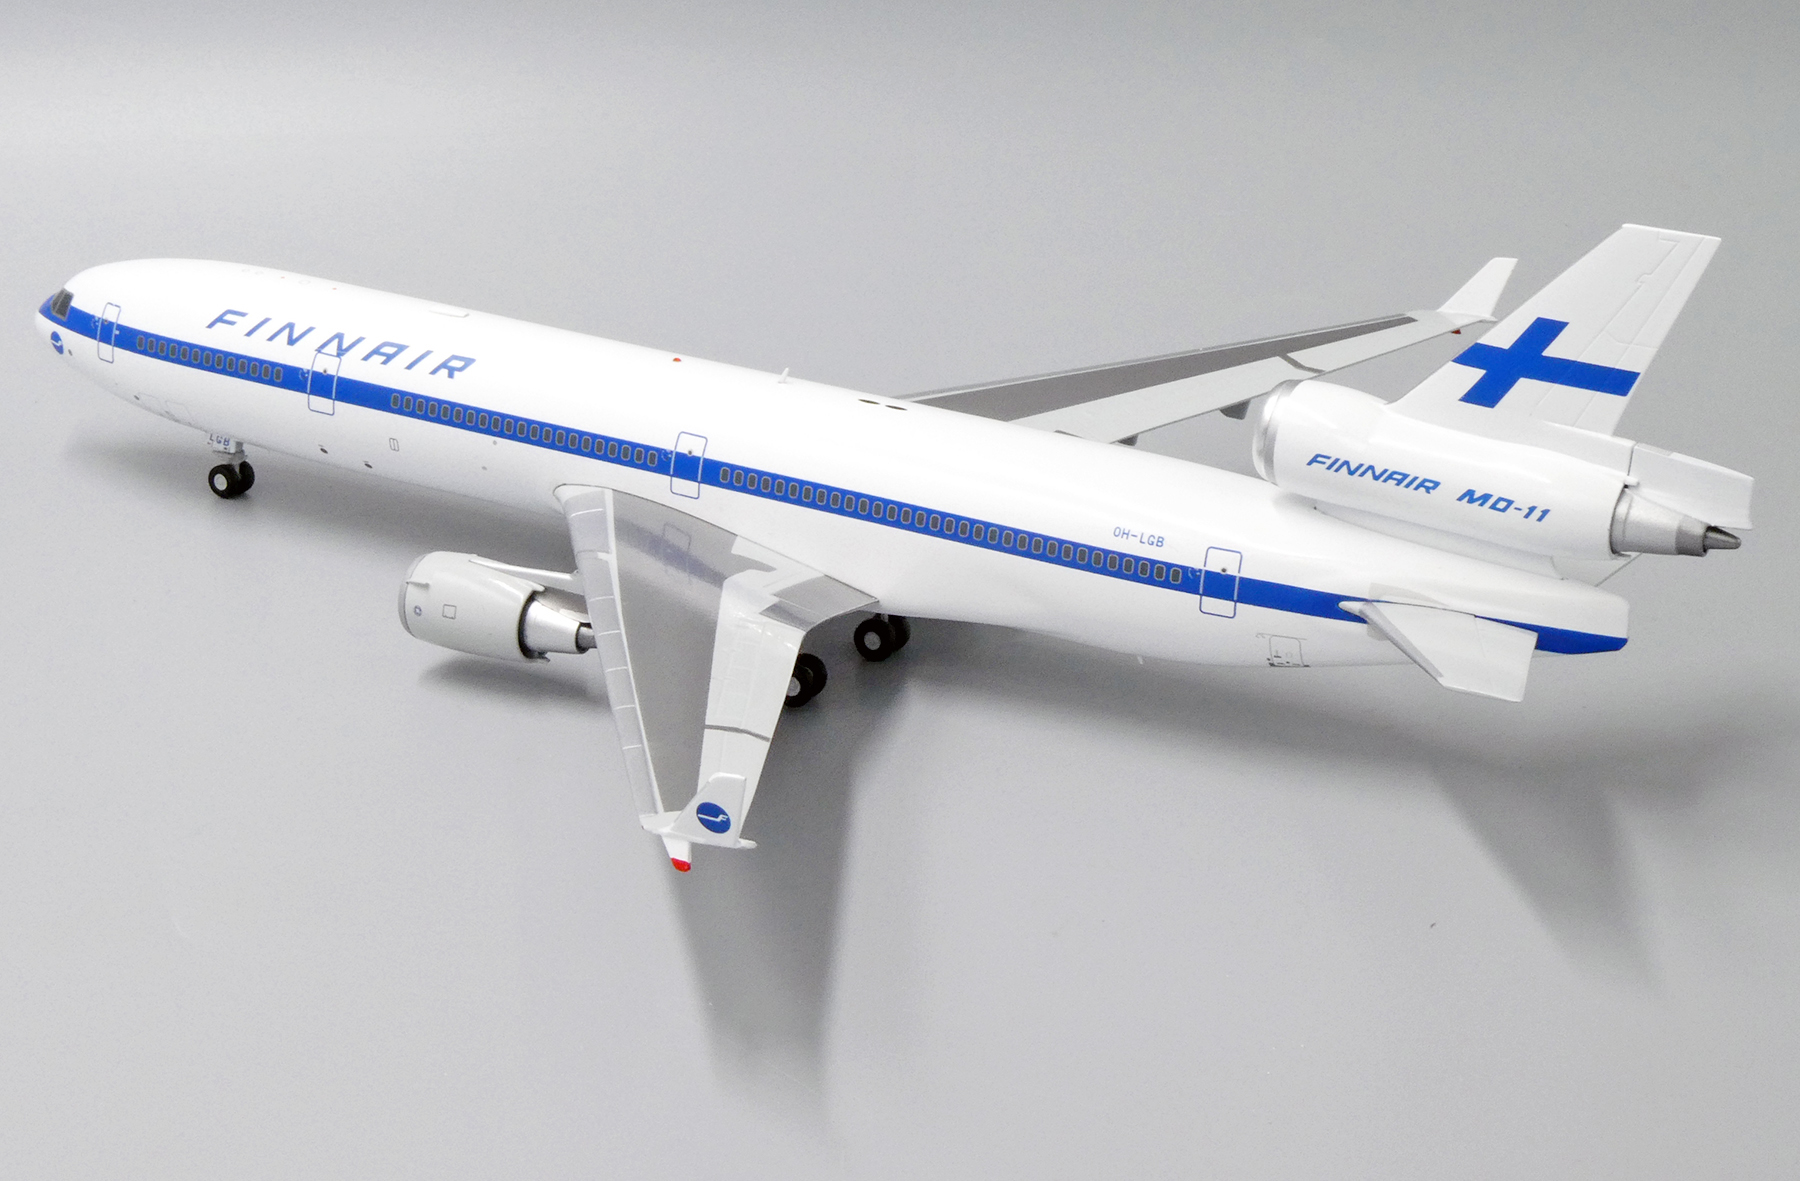 フィンランド航空 フィンエアー MD-11 飛行機 模型 台座付き 【正規品